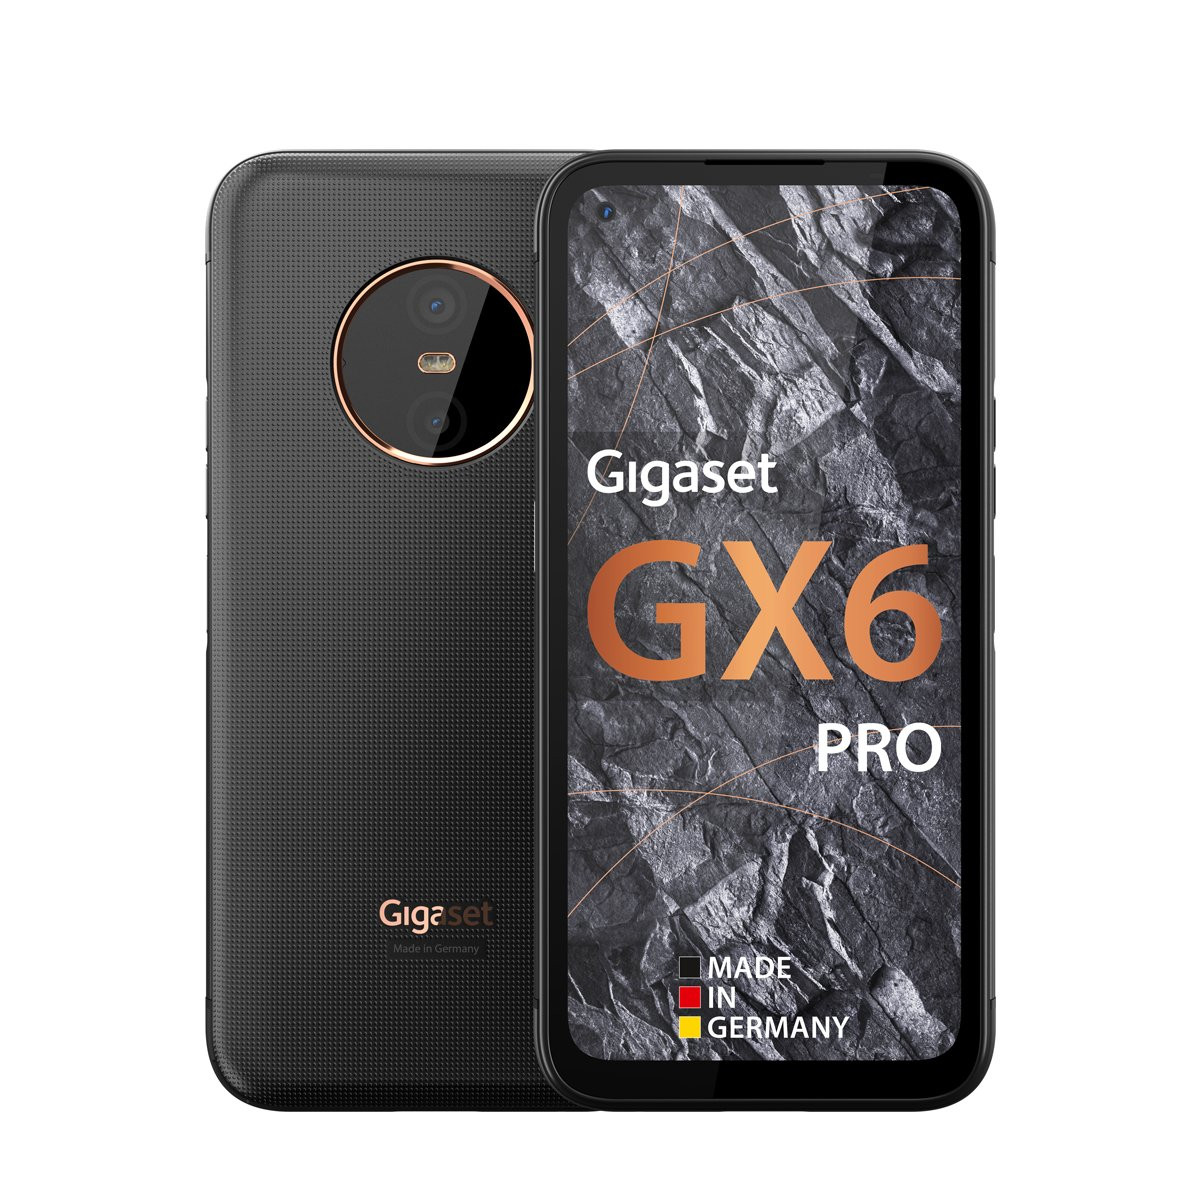 Gigaset GX6 PRO: Lo smartphone 5G outdoor più raffinato con 8GB/128GB